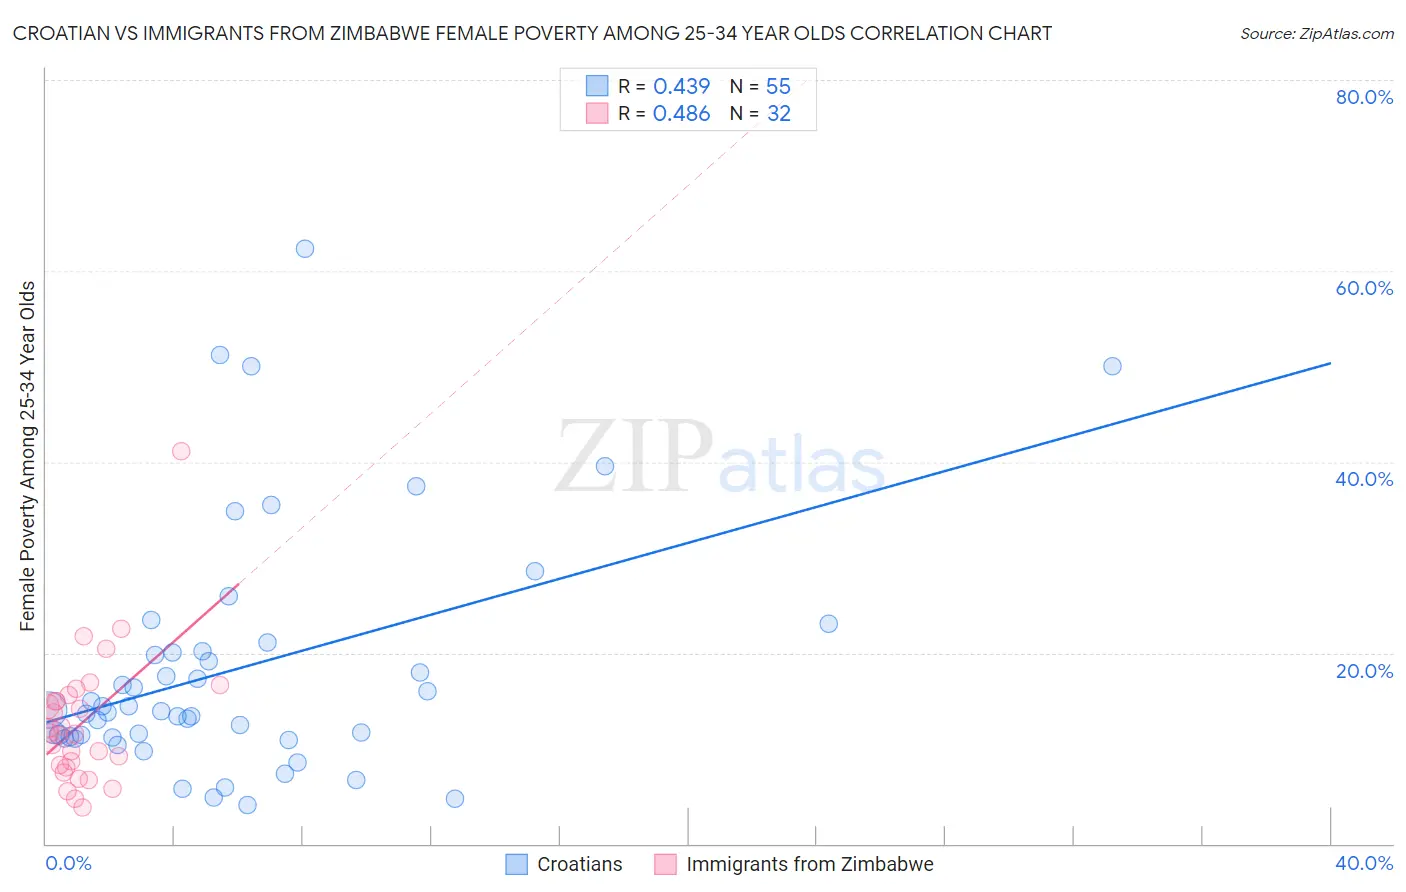 Croatian vs Immigrants from Zimbabwe Female Poverty Among 25-34 Year Olds